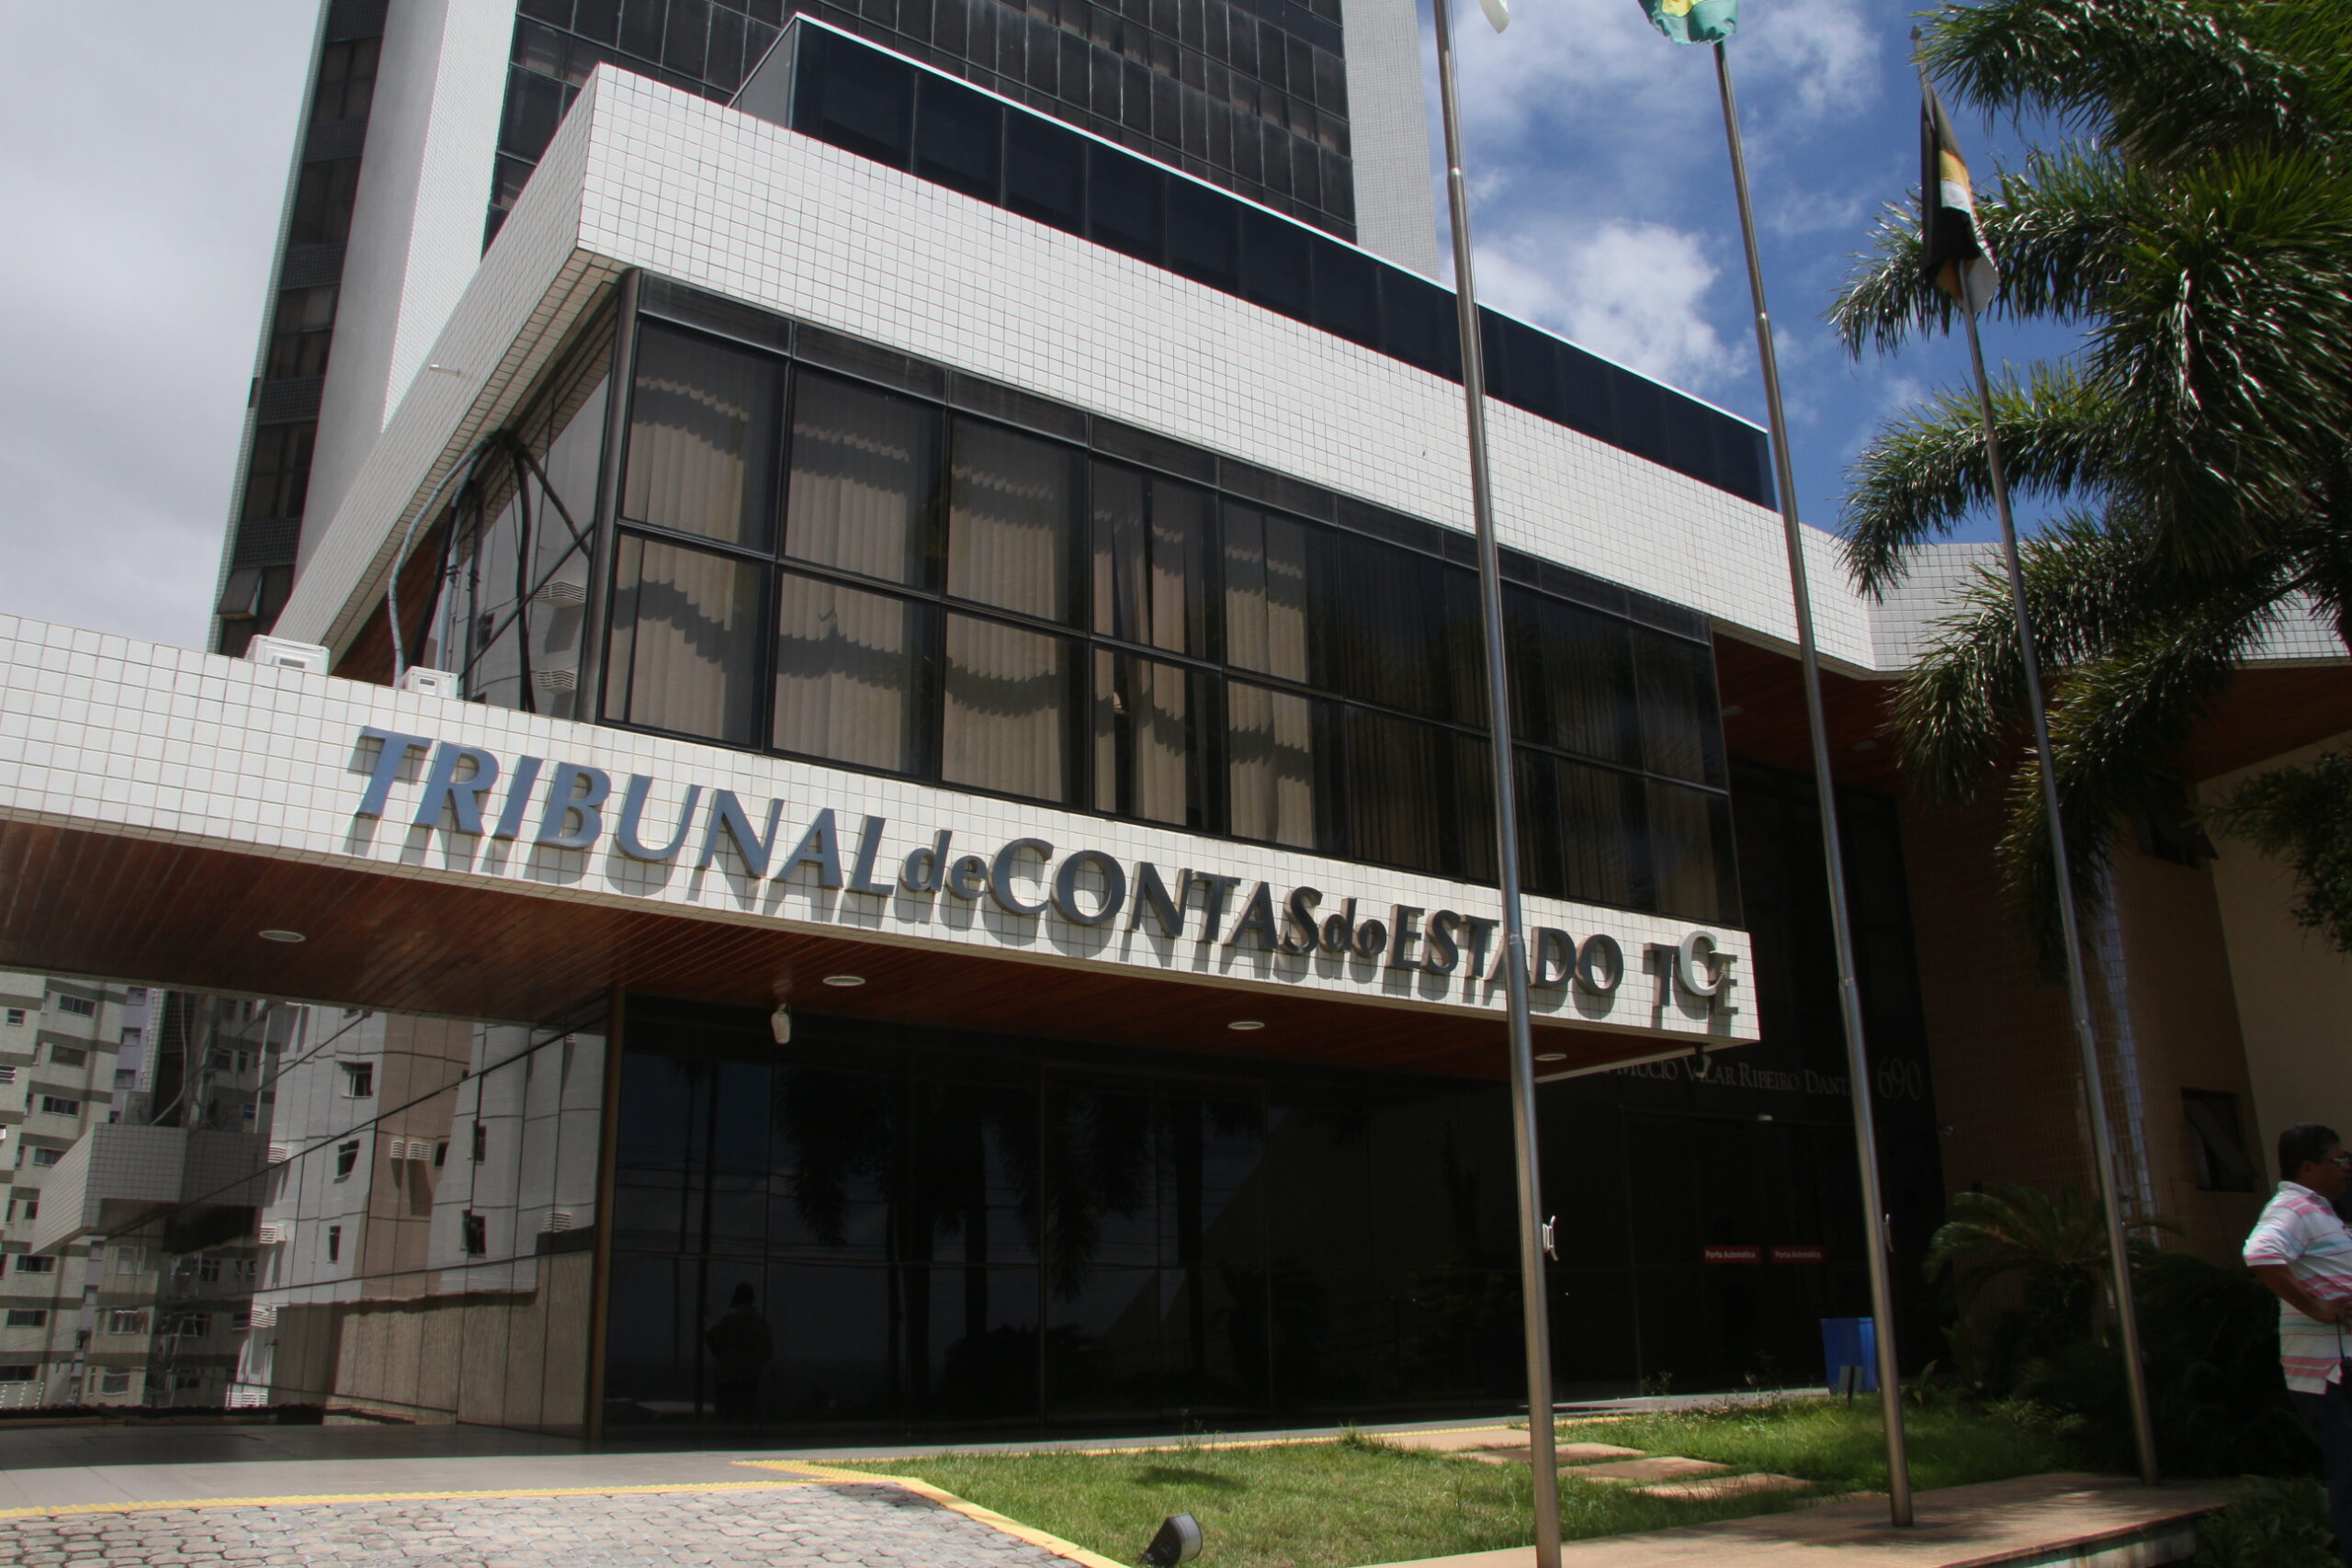 Tribunal de Contas do Estado do Rio Grande do Norte (TCE-RN)